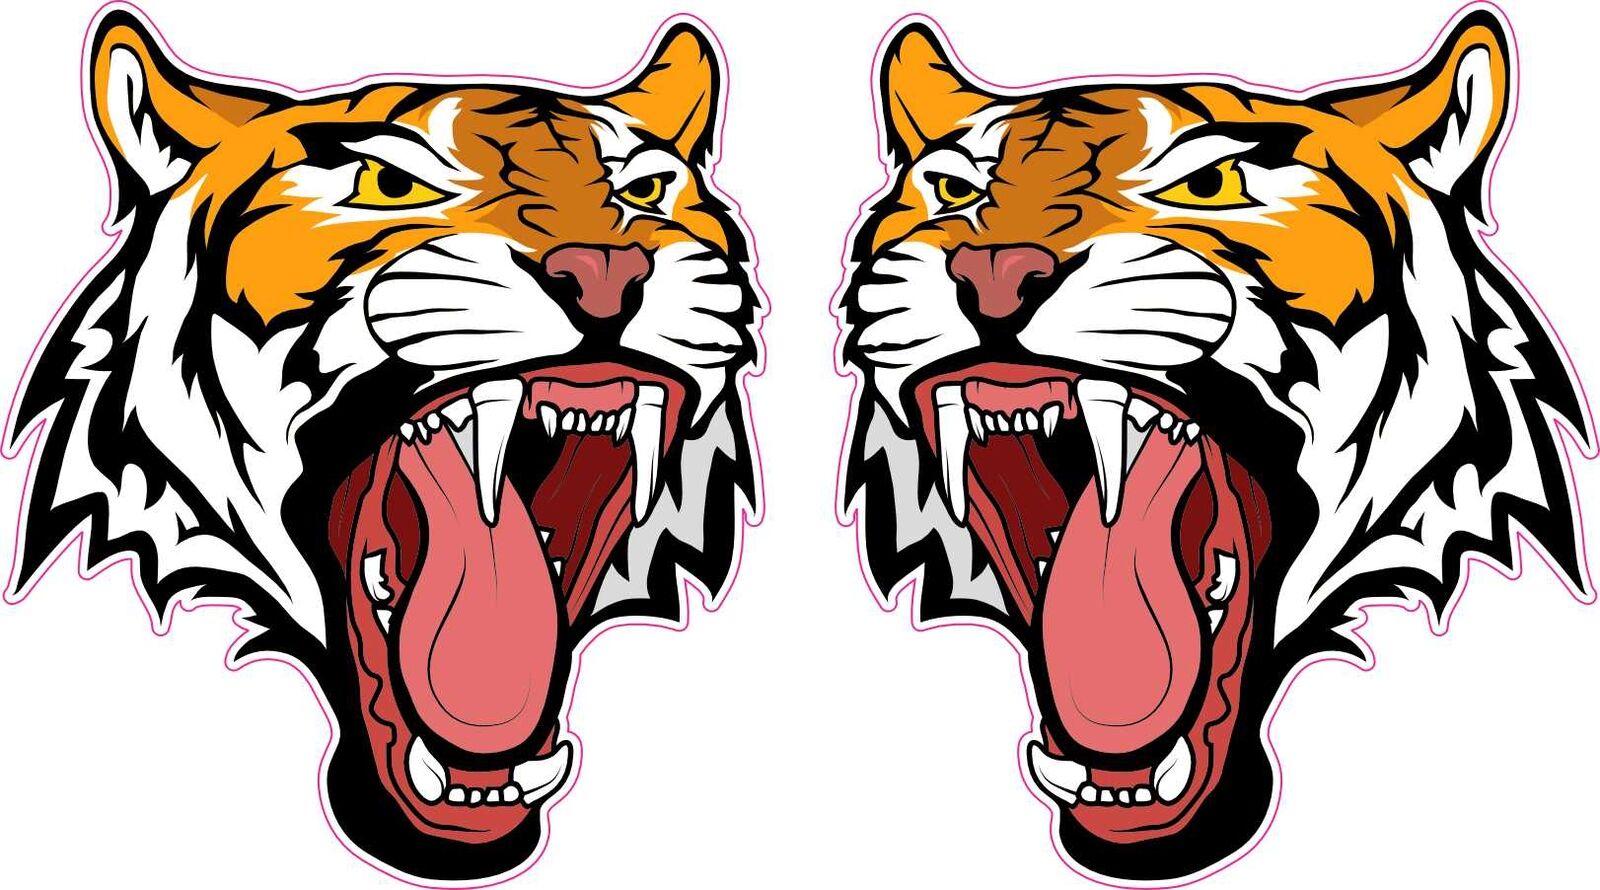 StickerTalk Mirrored Tiger Head Mascot Stickers, 2.6 inches x 3 inches